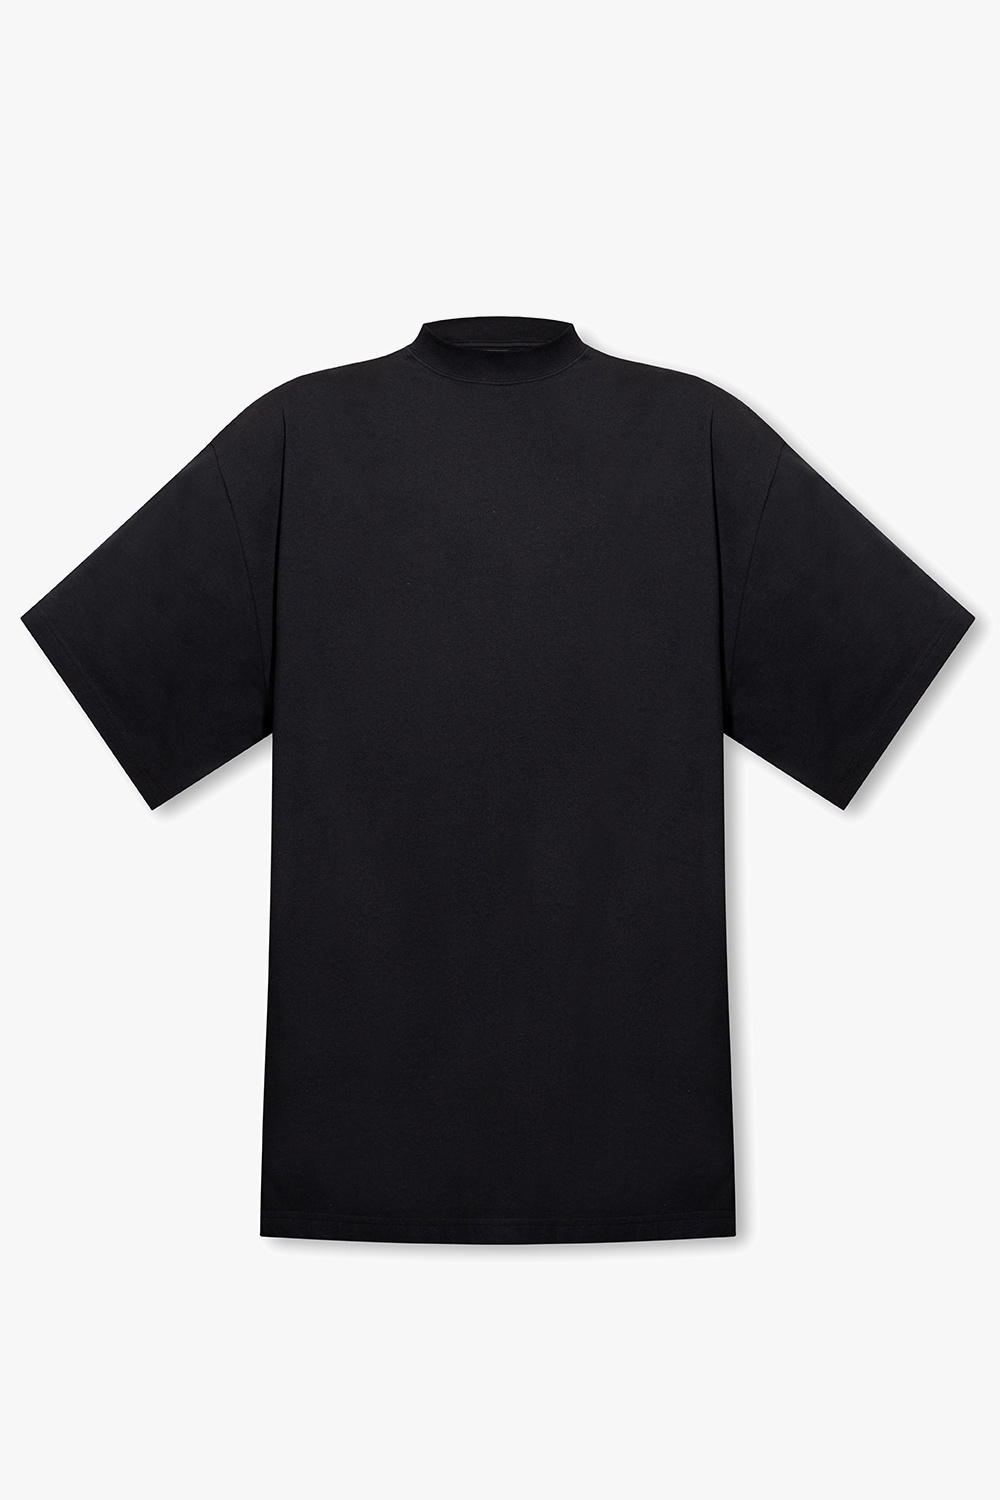 Balenciaga Loose-fitting T-shirt